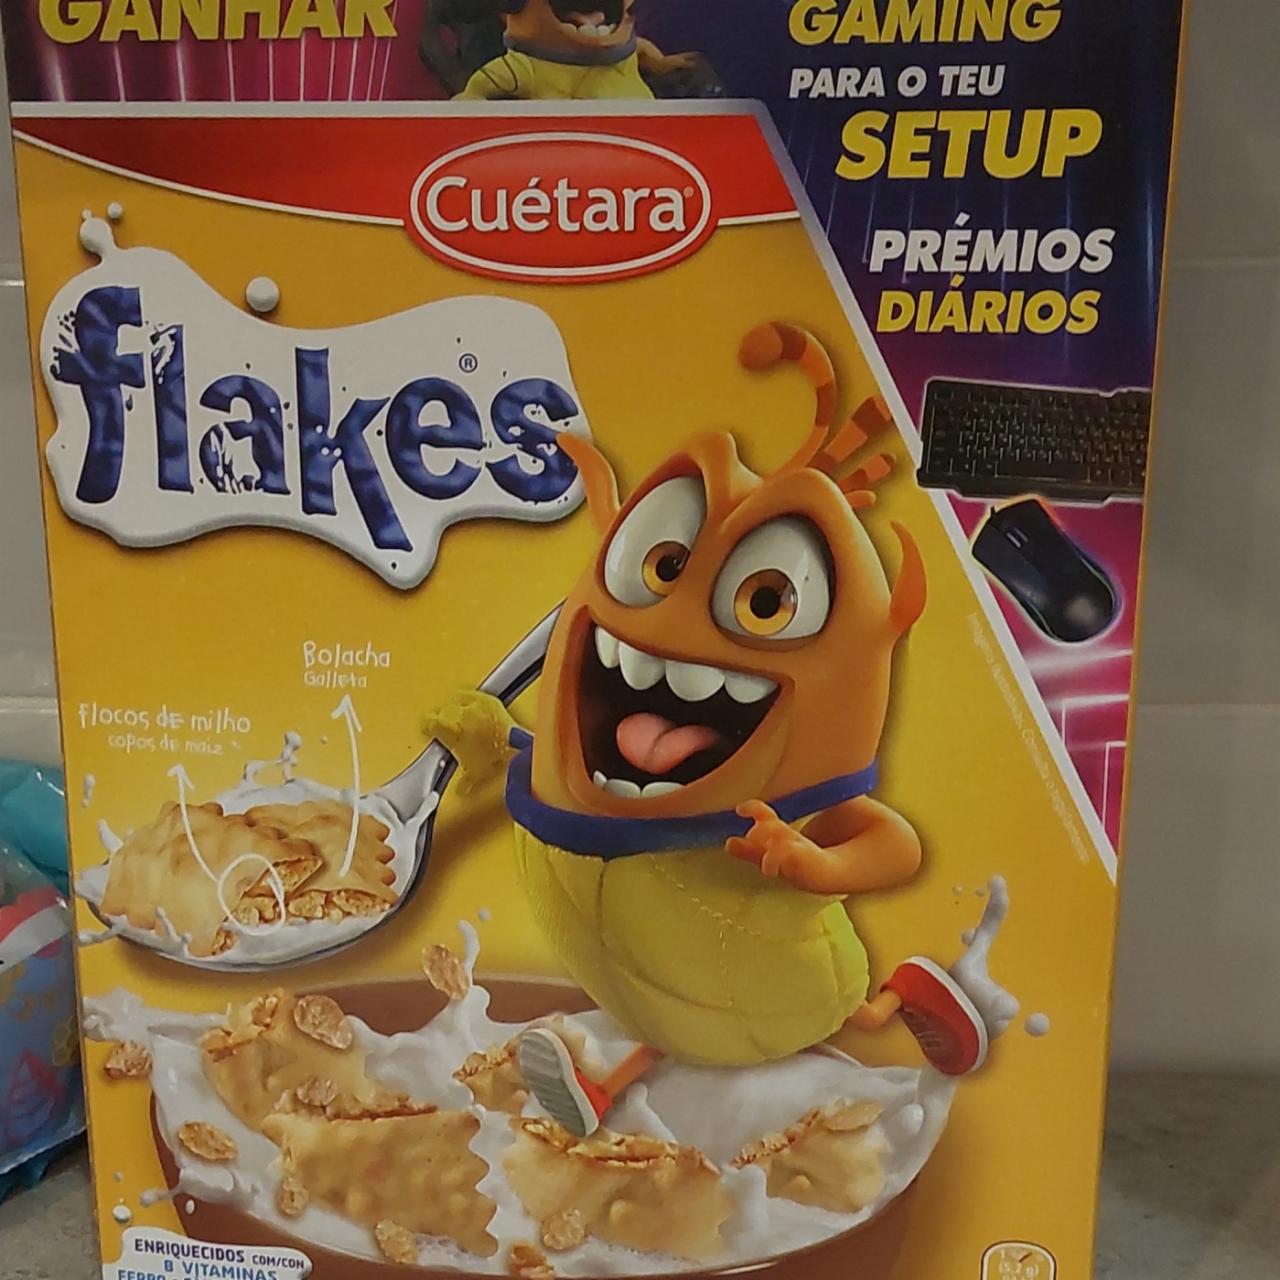 Фото - сухой завтрак хлопья печеные flakes Cuètara